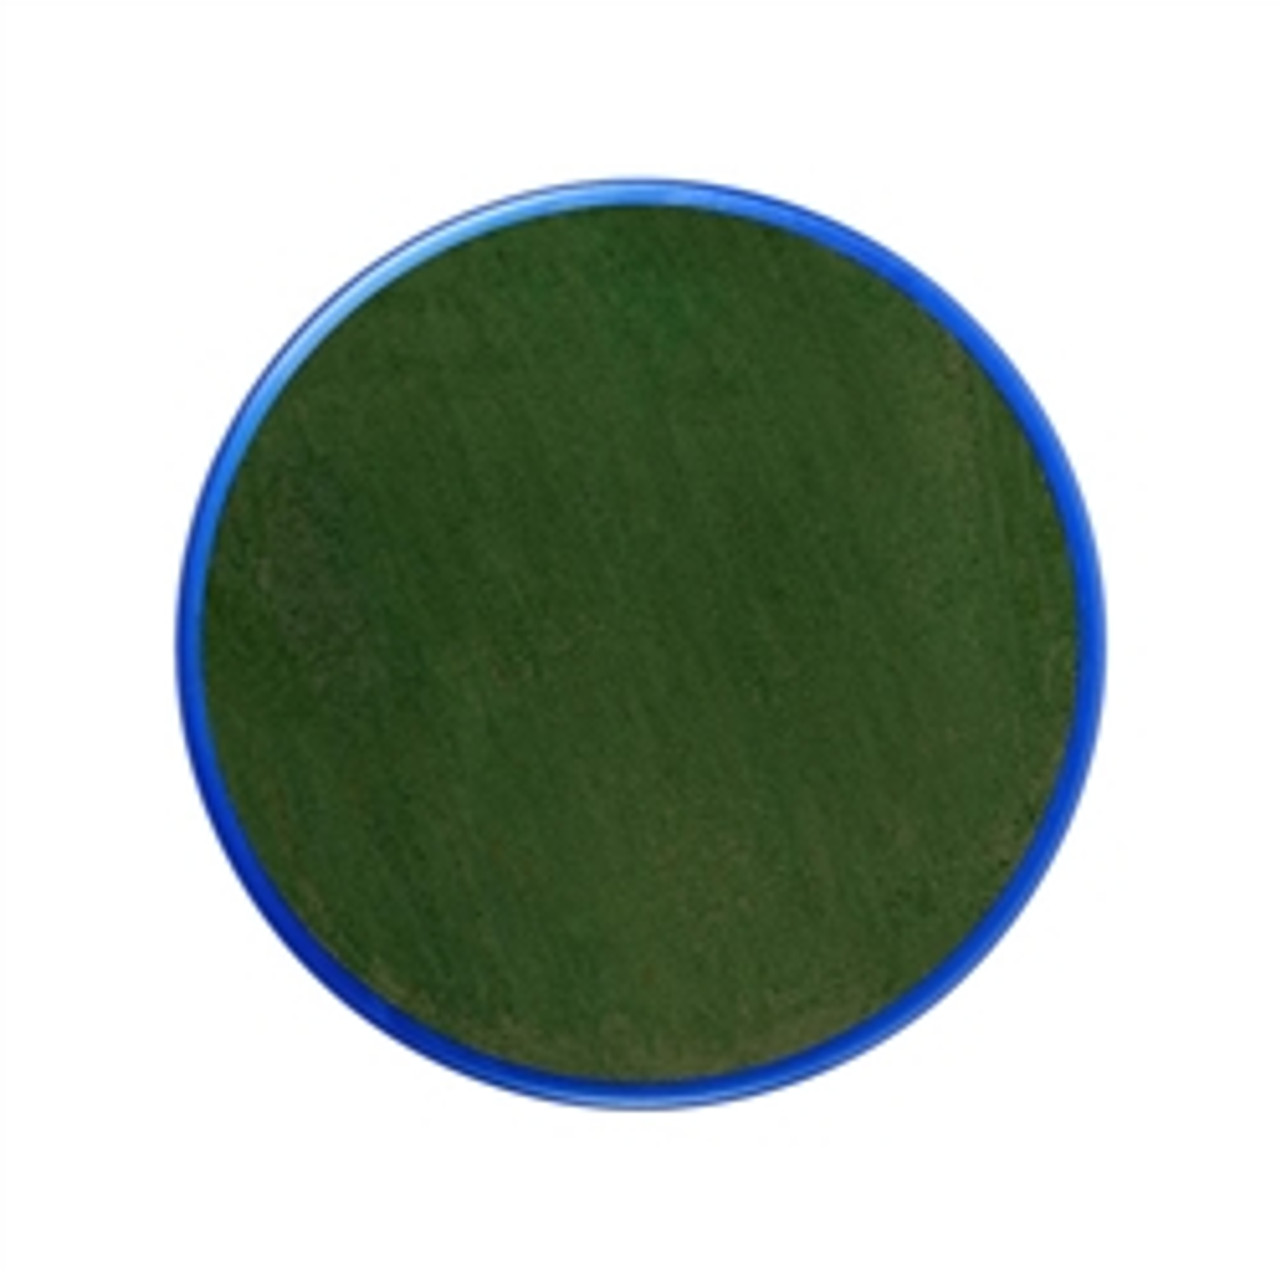 Snazaroo Face Paint 18ml-Grass Green